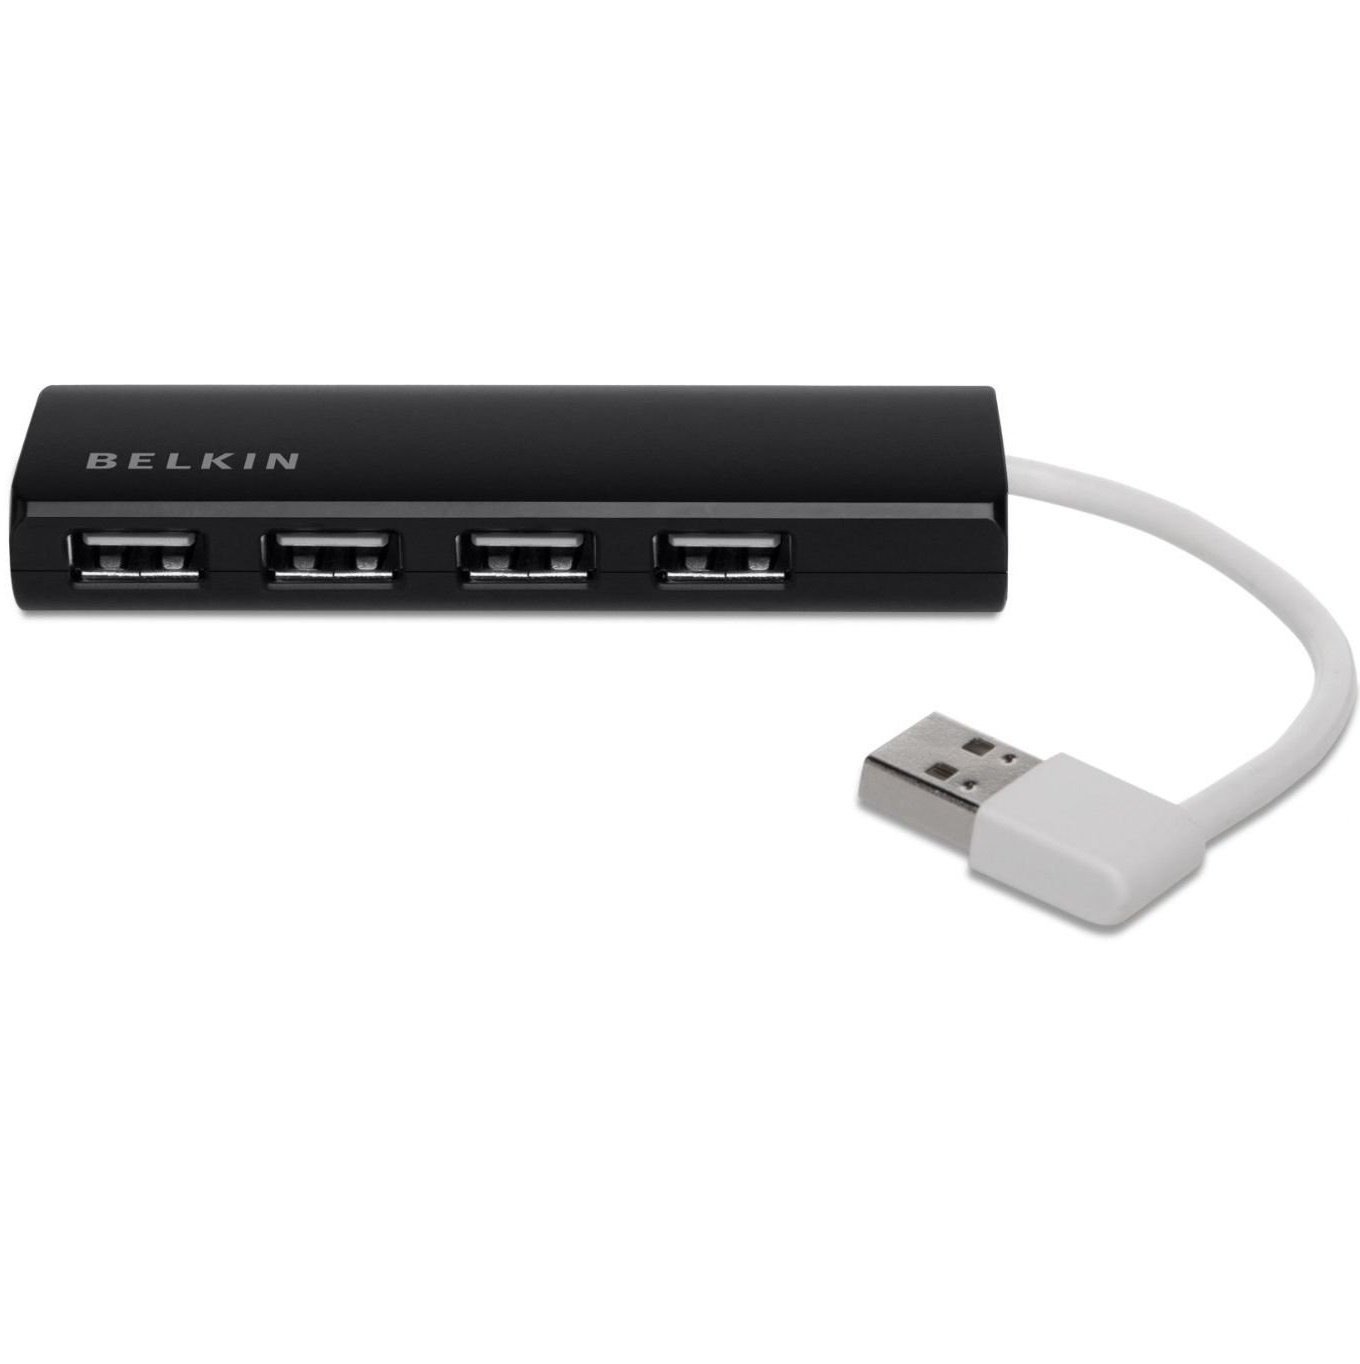 USB Хаб Belkin USB 2.0, Ultra-Slim Travel, пасивний без БП, Black (4 порту)фото